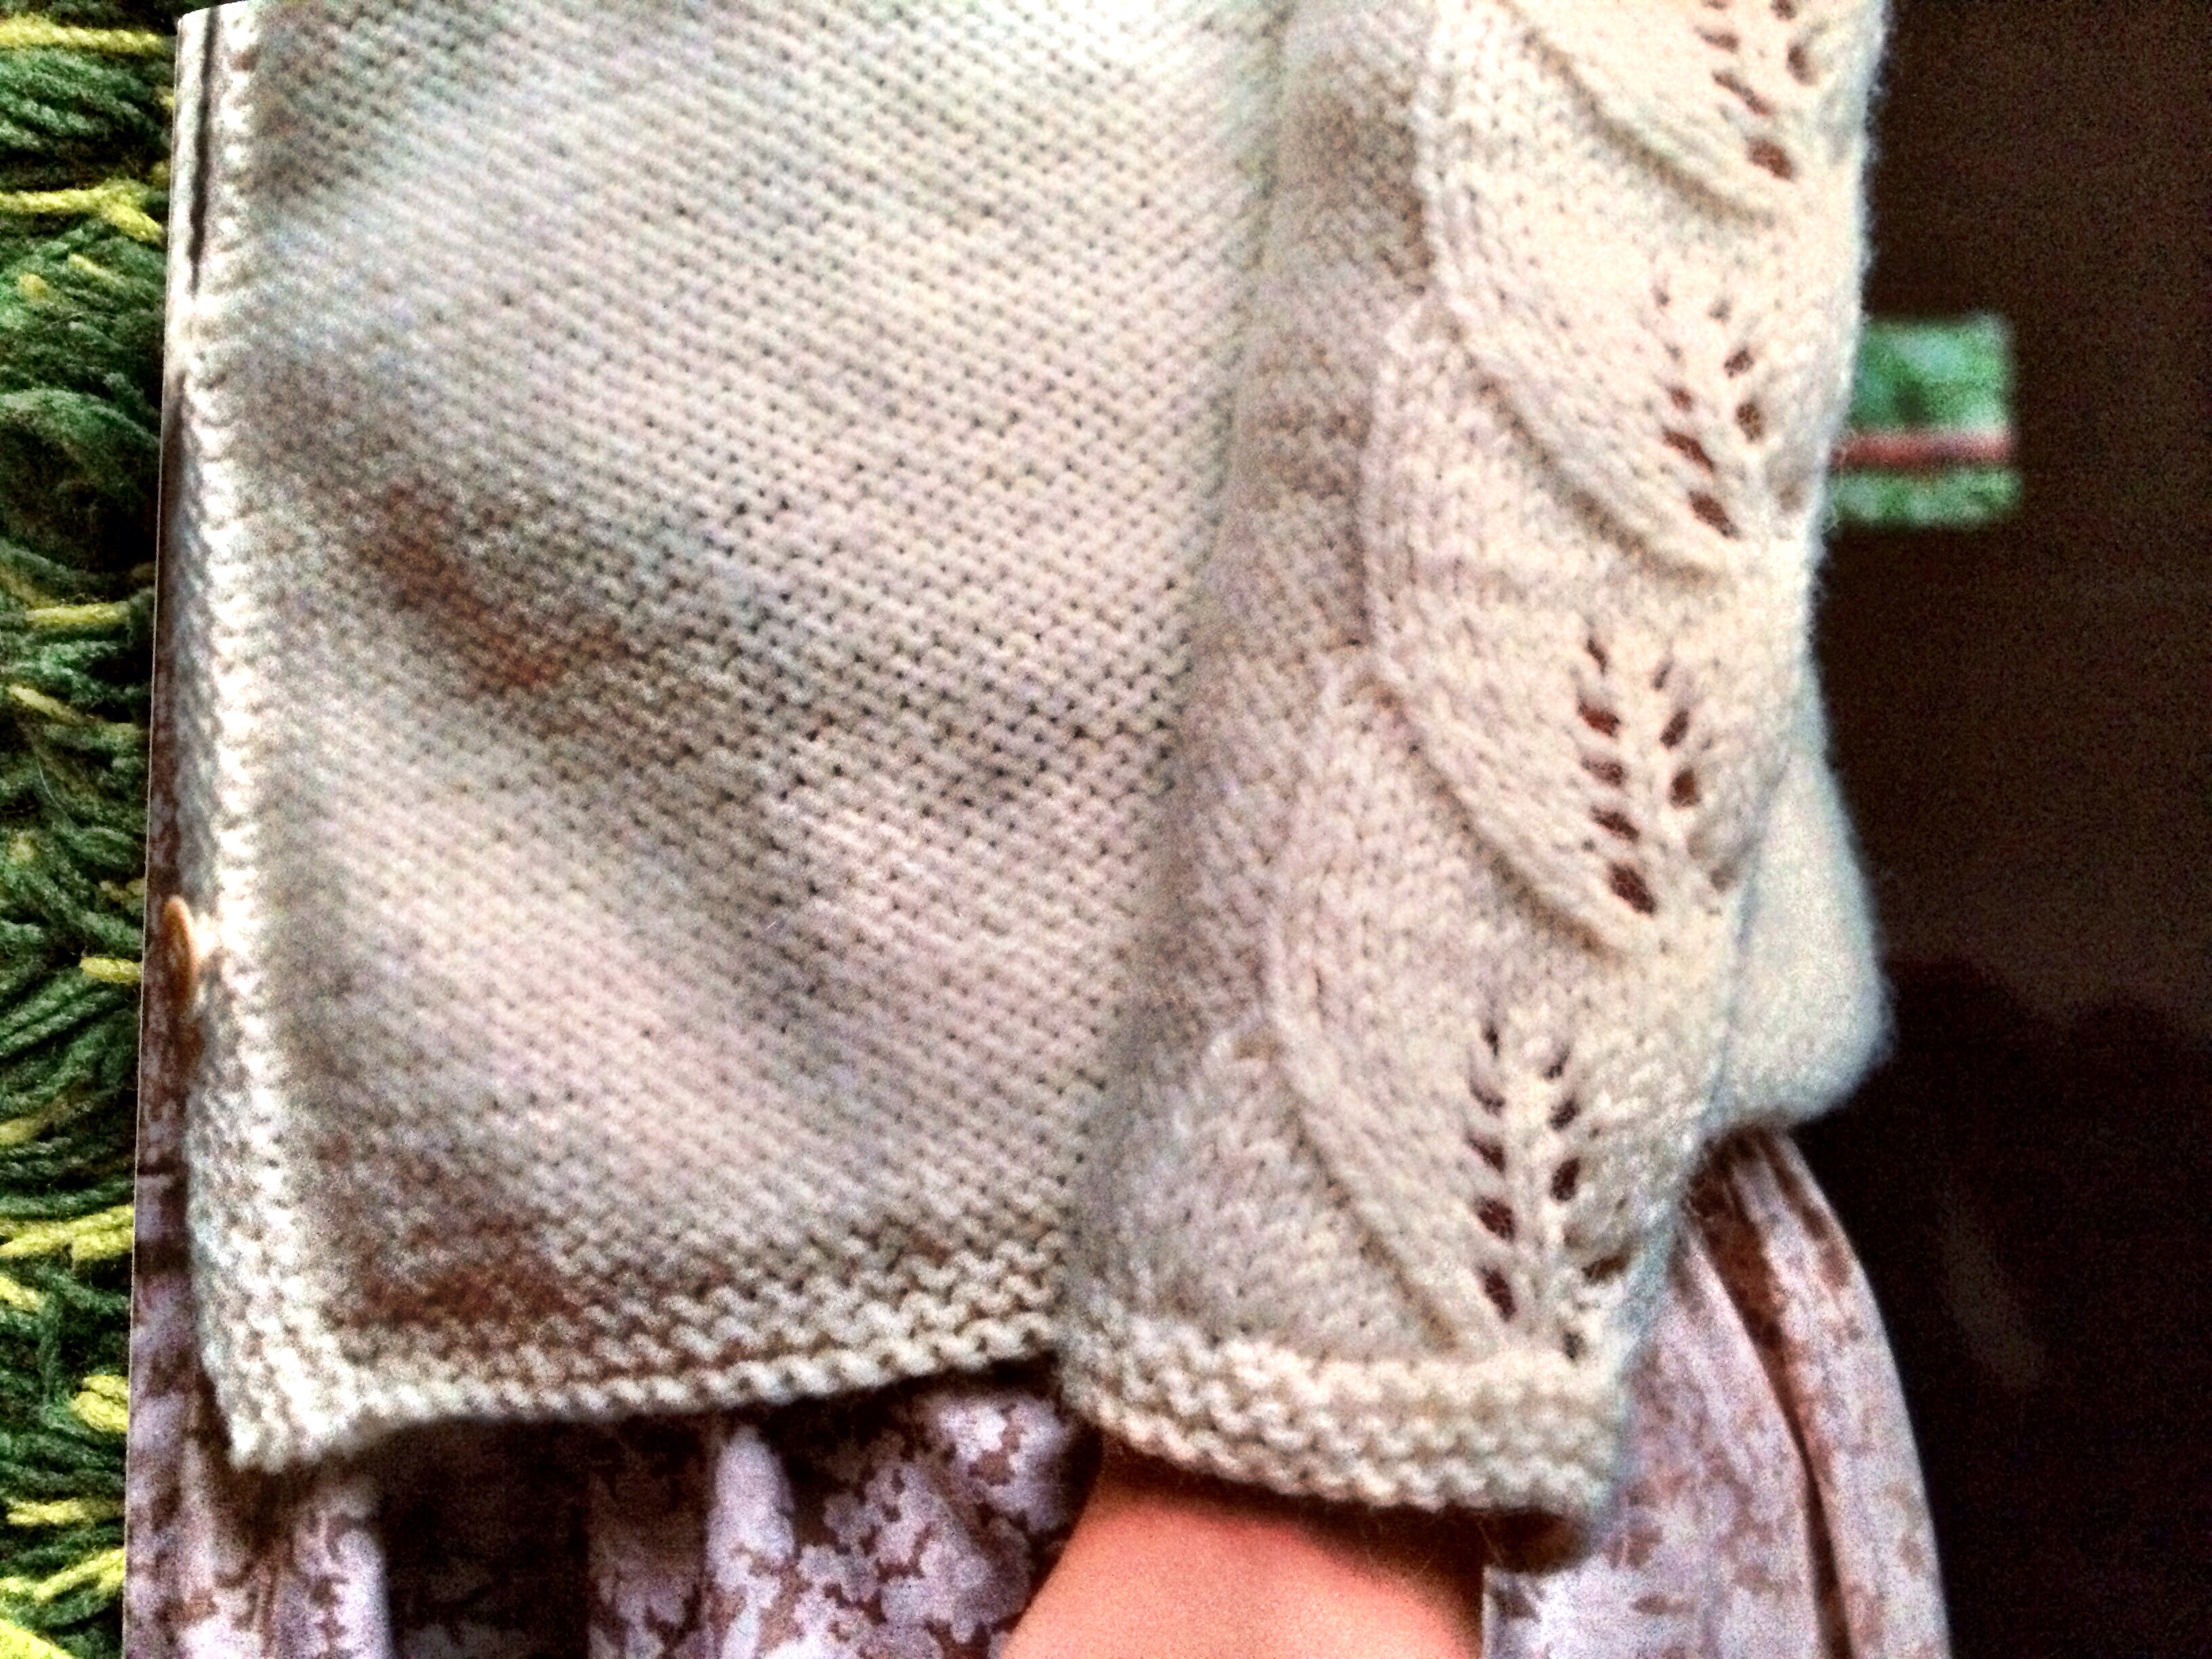 三國 万里子先生の「編み物ともだち」から編みたい作品たち♥ | けいとねこ